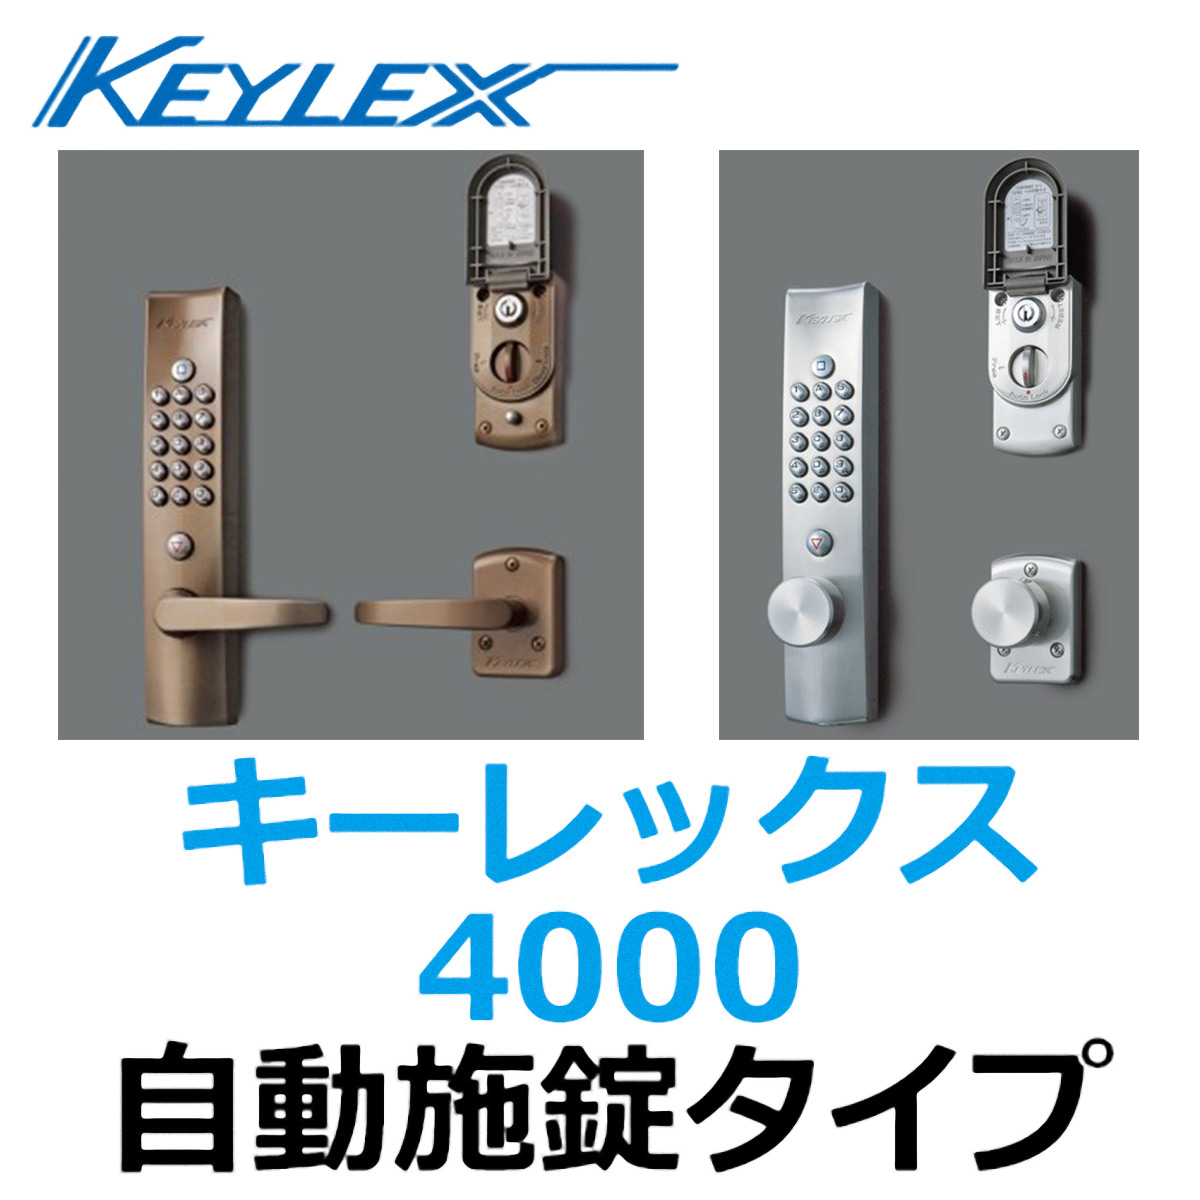 KEYLEX、キーレックス4000 自動施錠タイプ